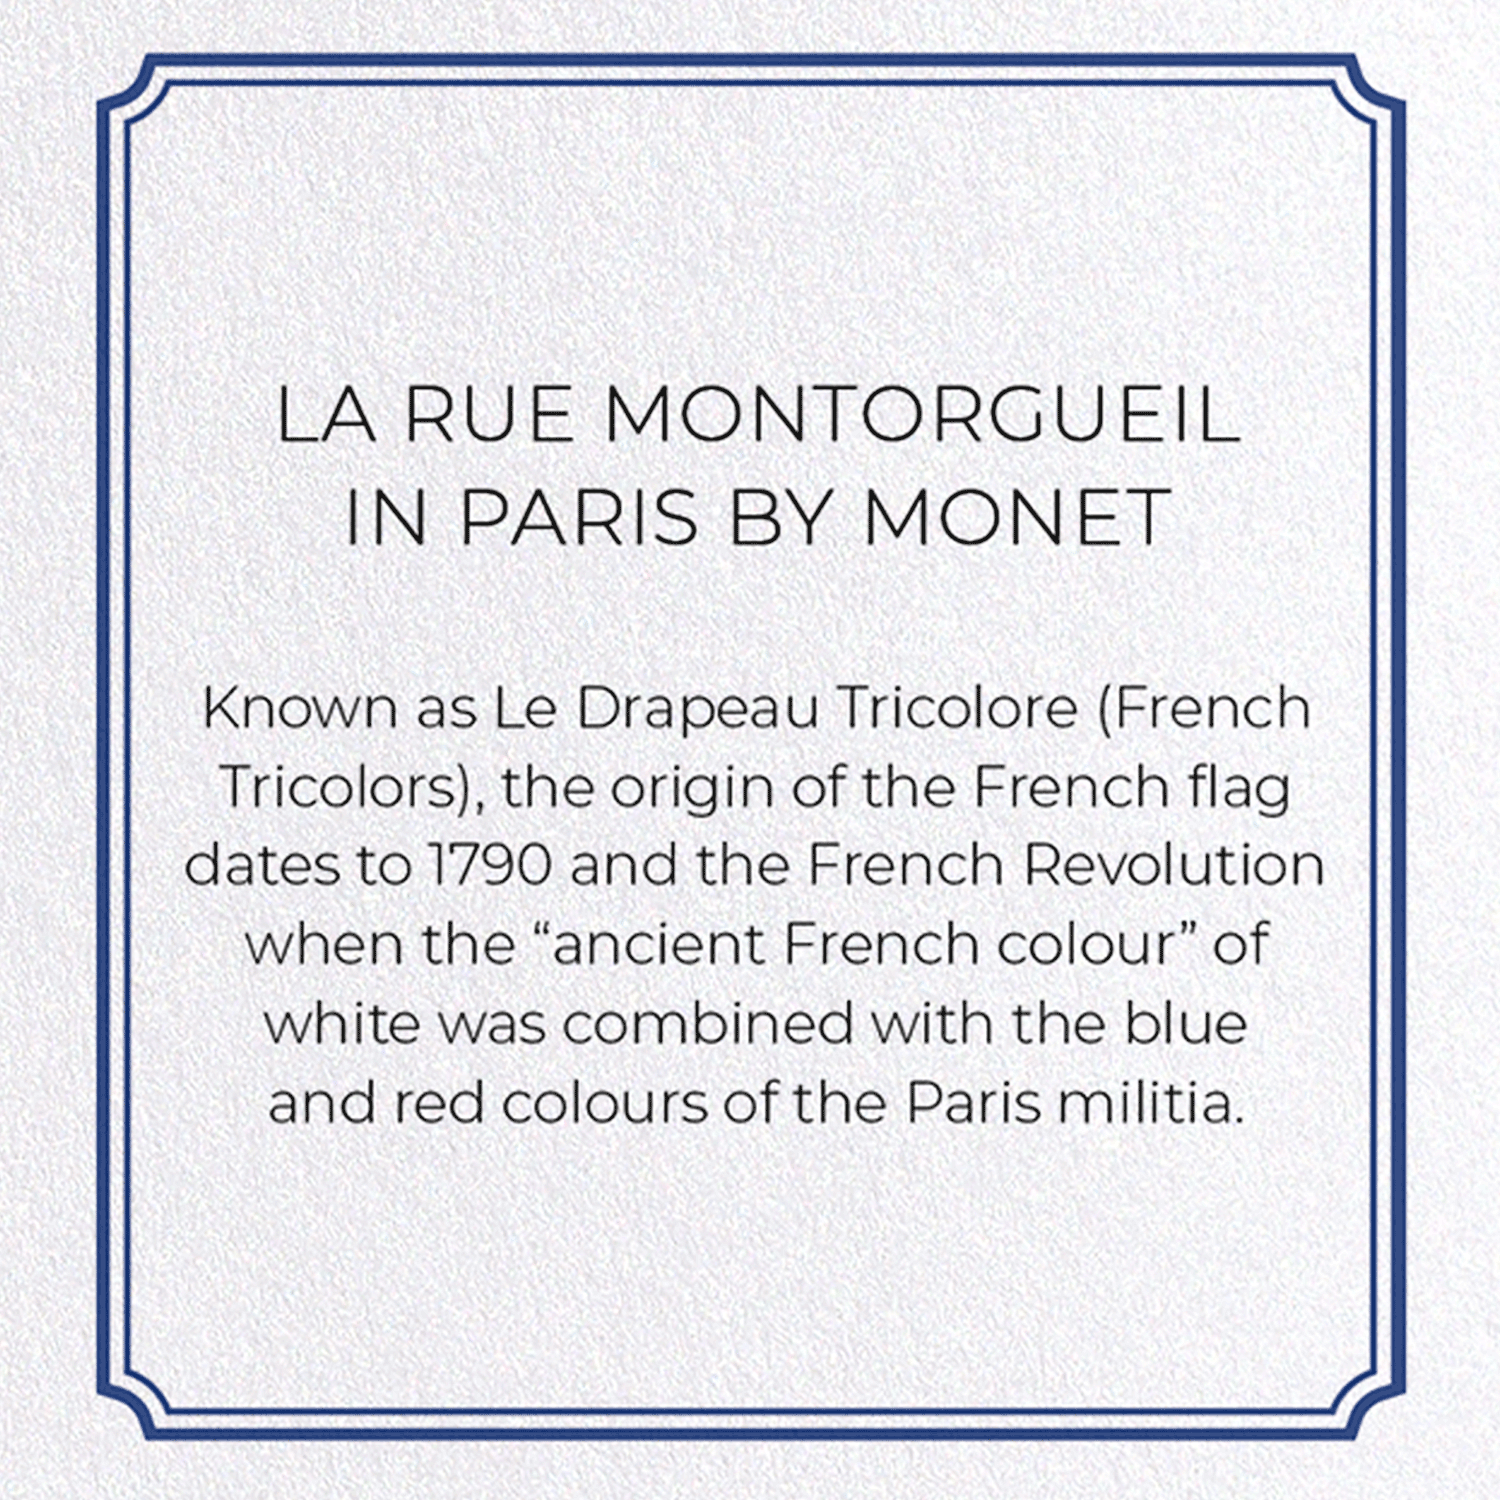 LA RUE MONTORGUEIL IN PARIS BY MONET